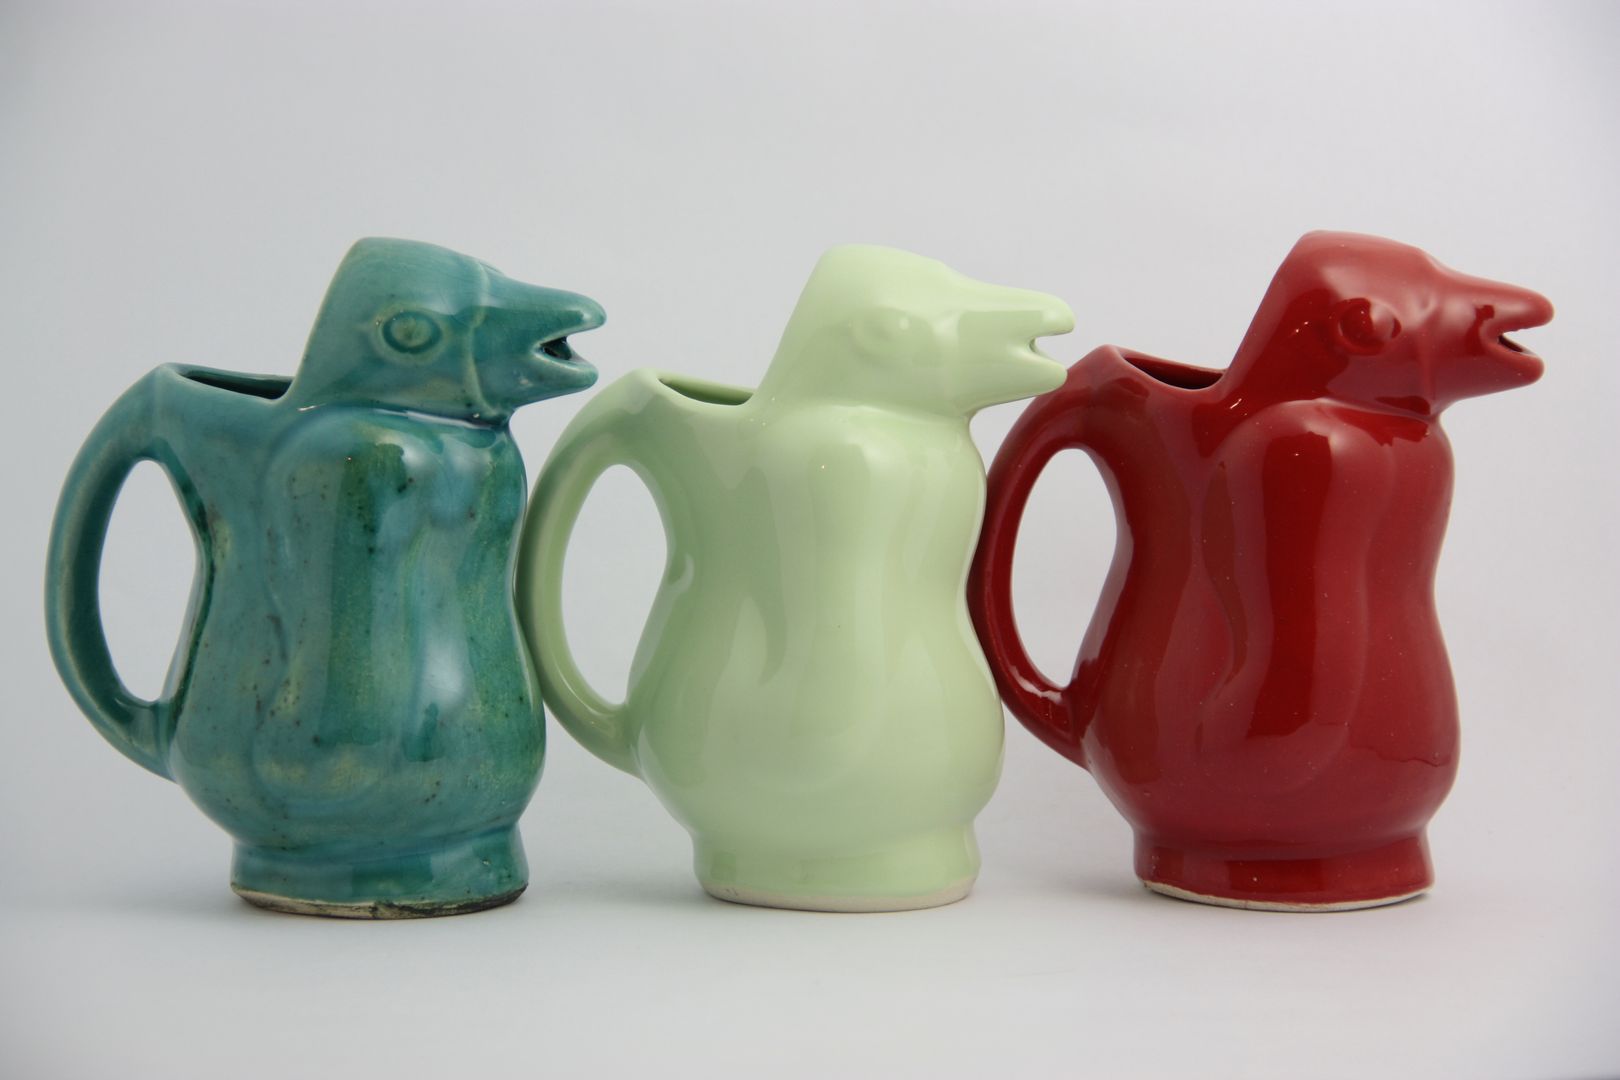 Pinguino jarra FRIDA ceramica Cocinas de estilo ecléctico Vasos, cubiertos y vajilla